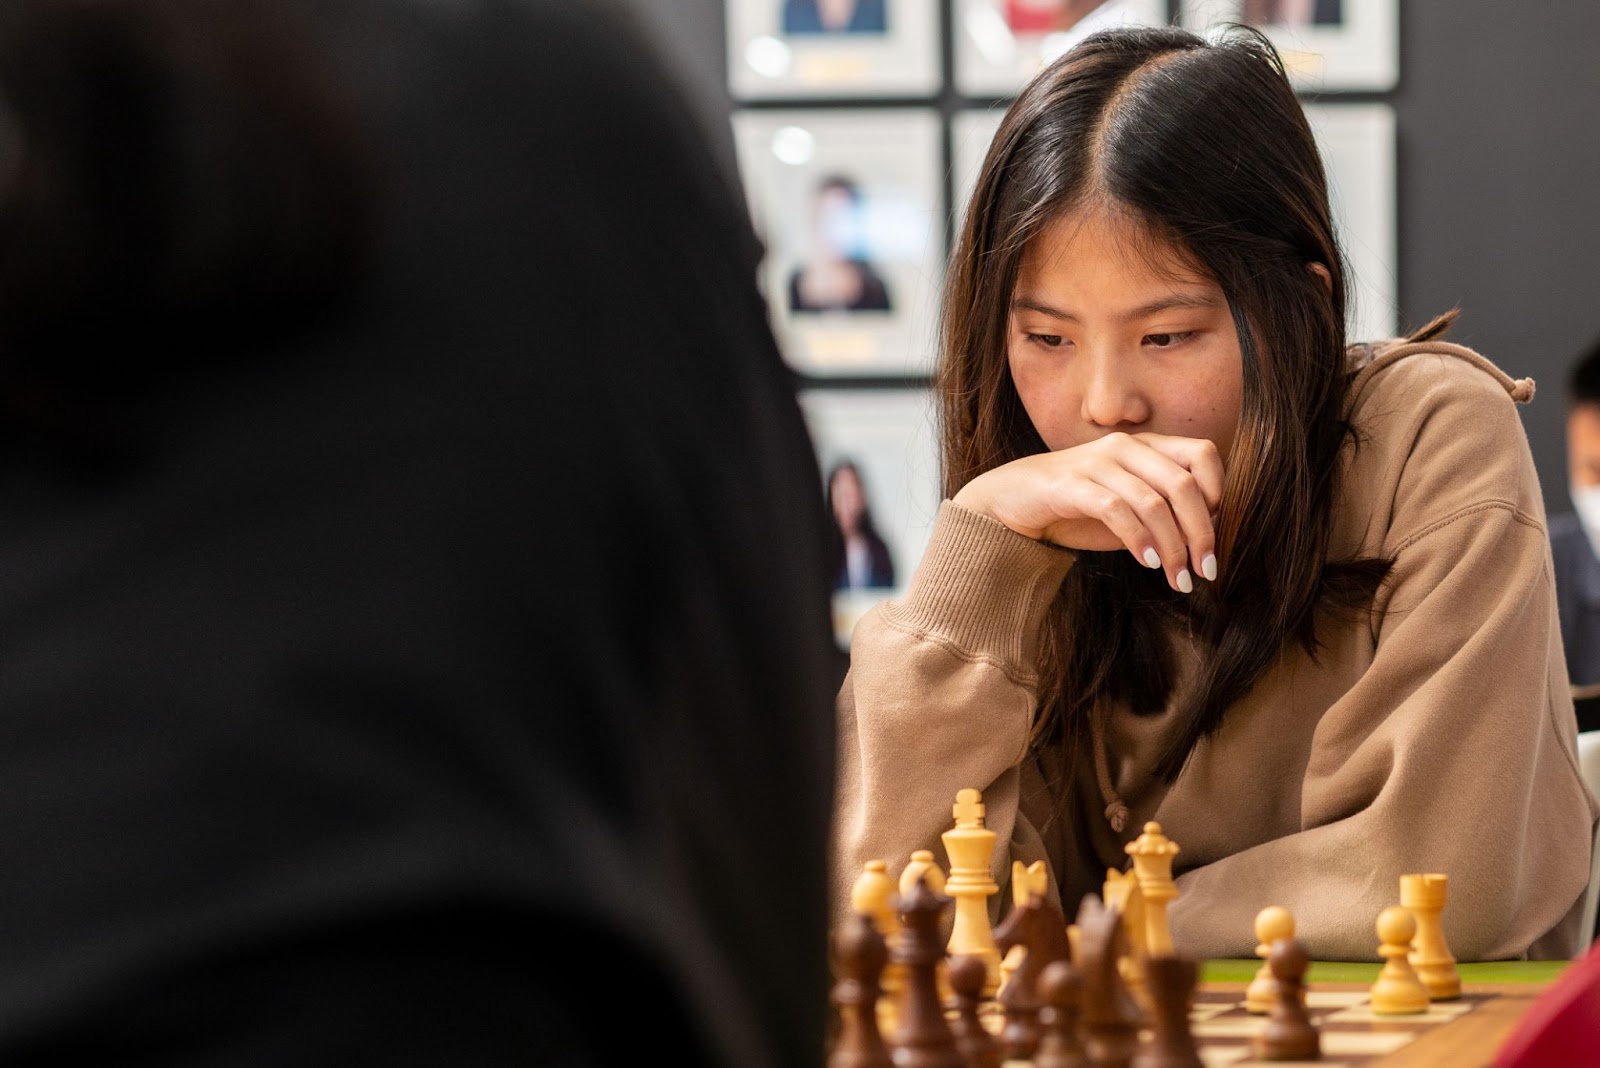 World Junior Championship: Leaders prevail in Round 7 - Schach-Ticker